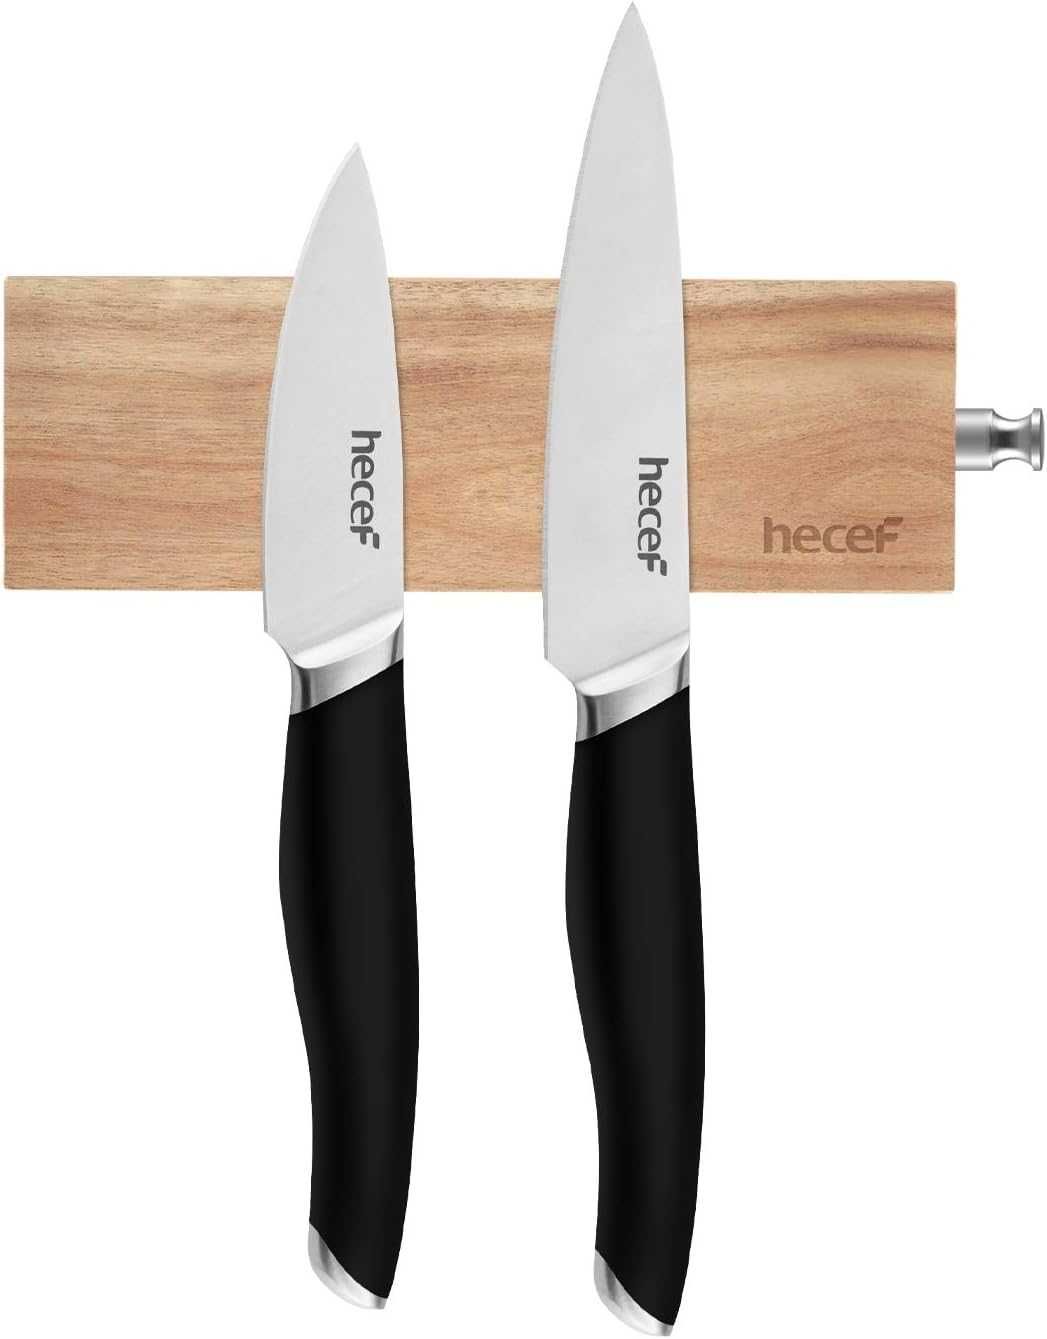 Listwa magnetyczna na noże, drewno akacjowe, 15,5cm, HECEF